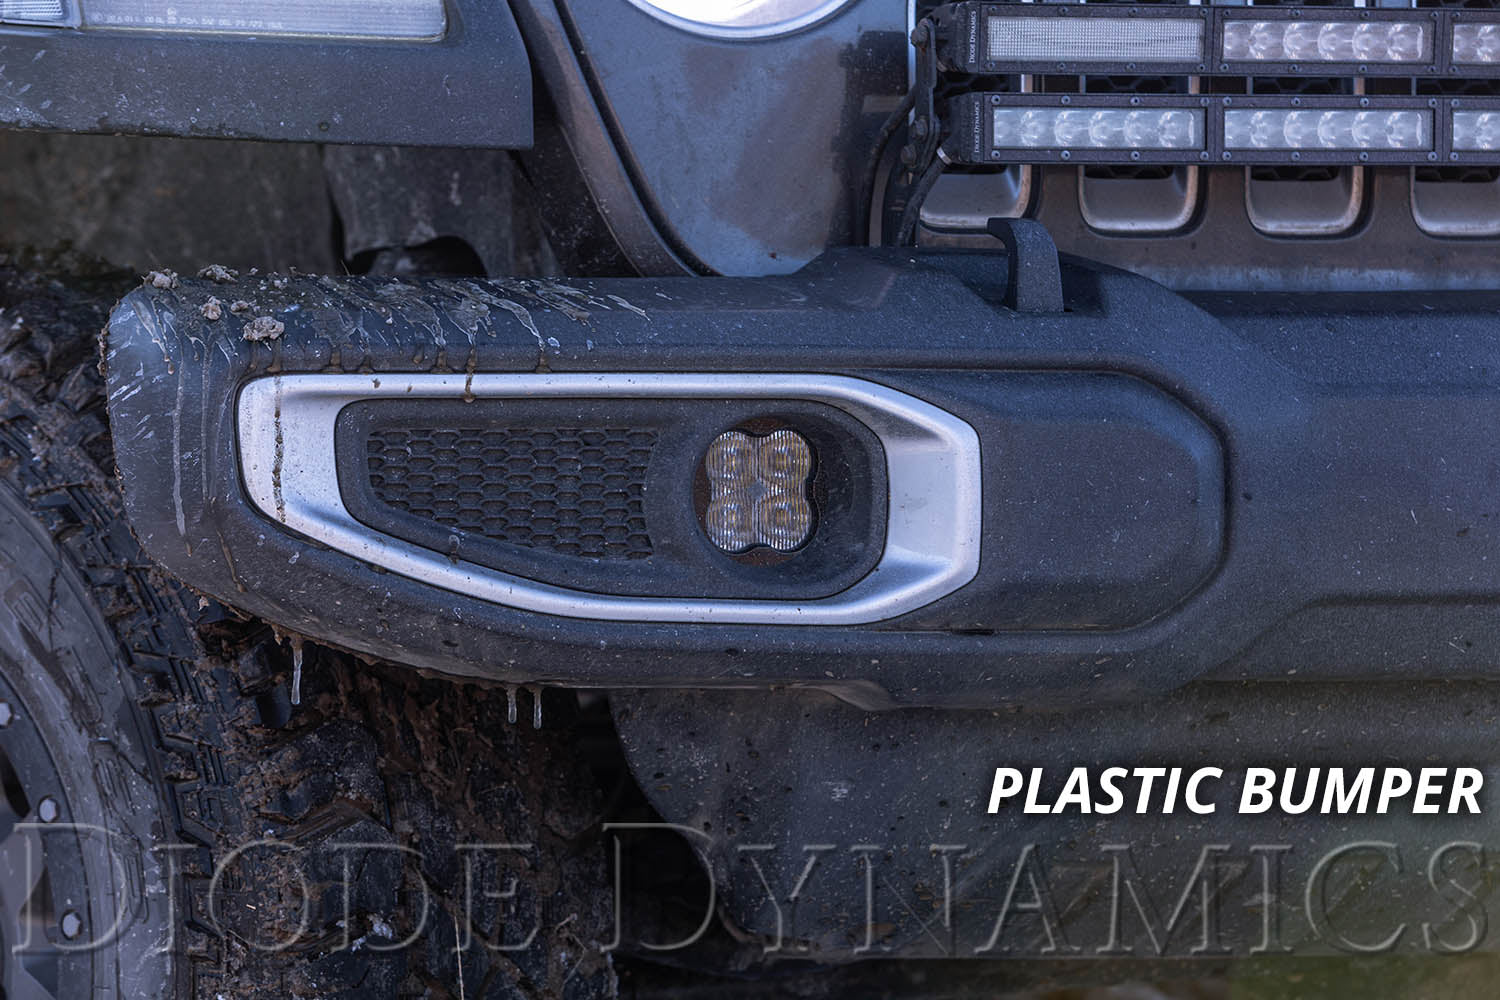 SS3 LED Fog Light Kit for 2020-2021 Jeep Gladiator White SAE/DOT Driving Pro w/ Backlight Type MS Bracket Kit Diode Dynamics